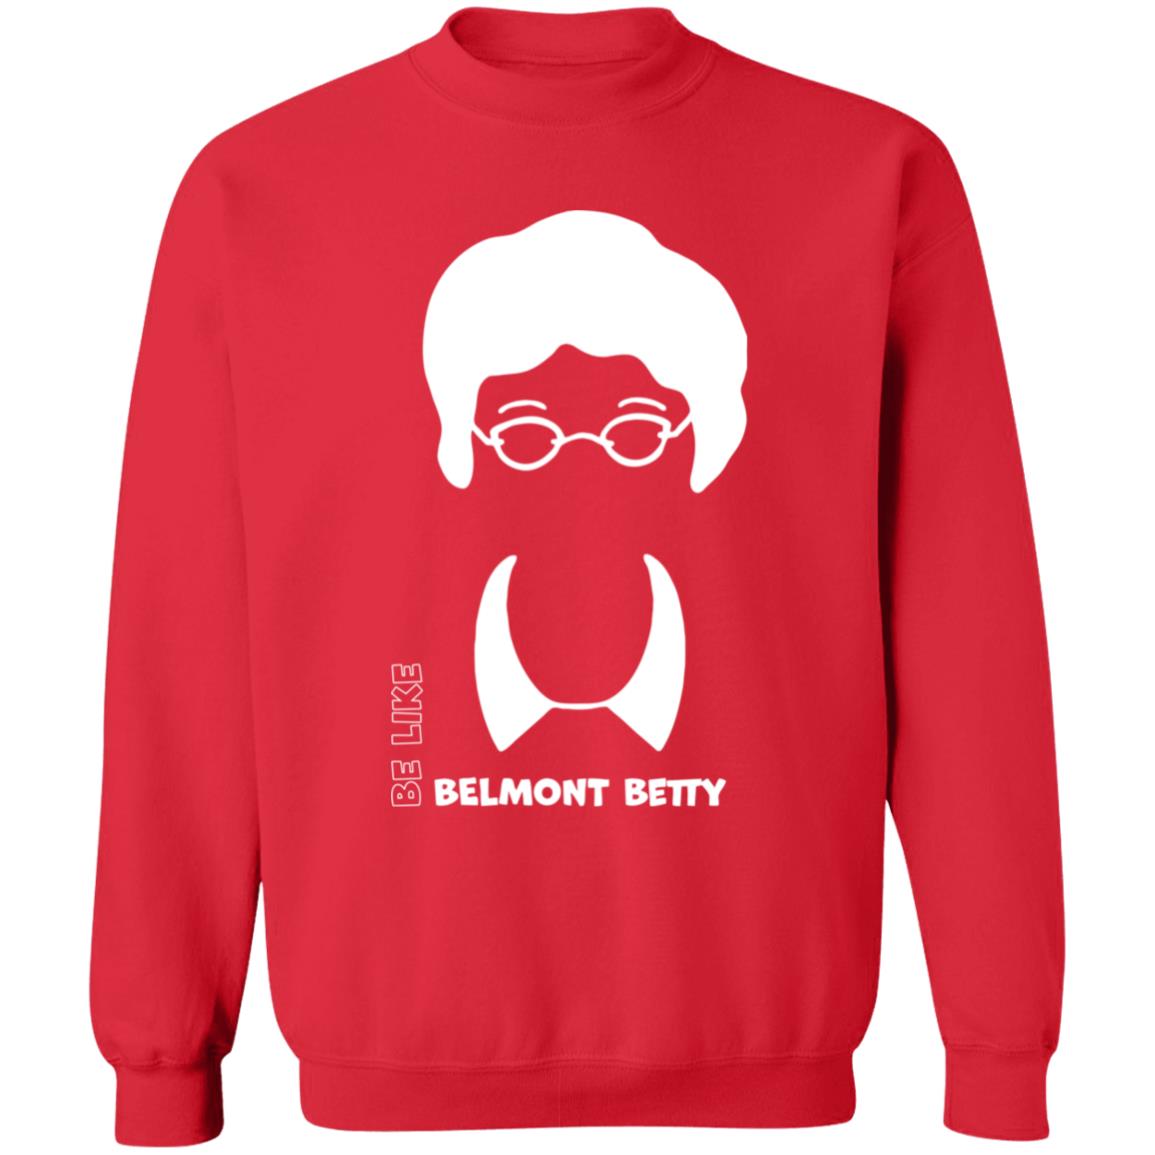 Be Like Belmont Betty Shirt 2